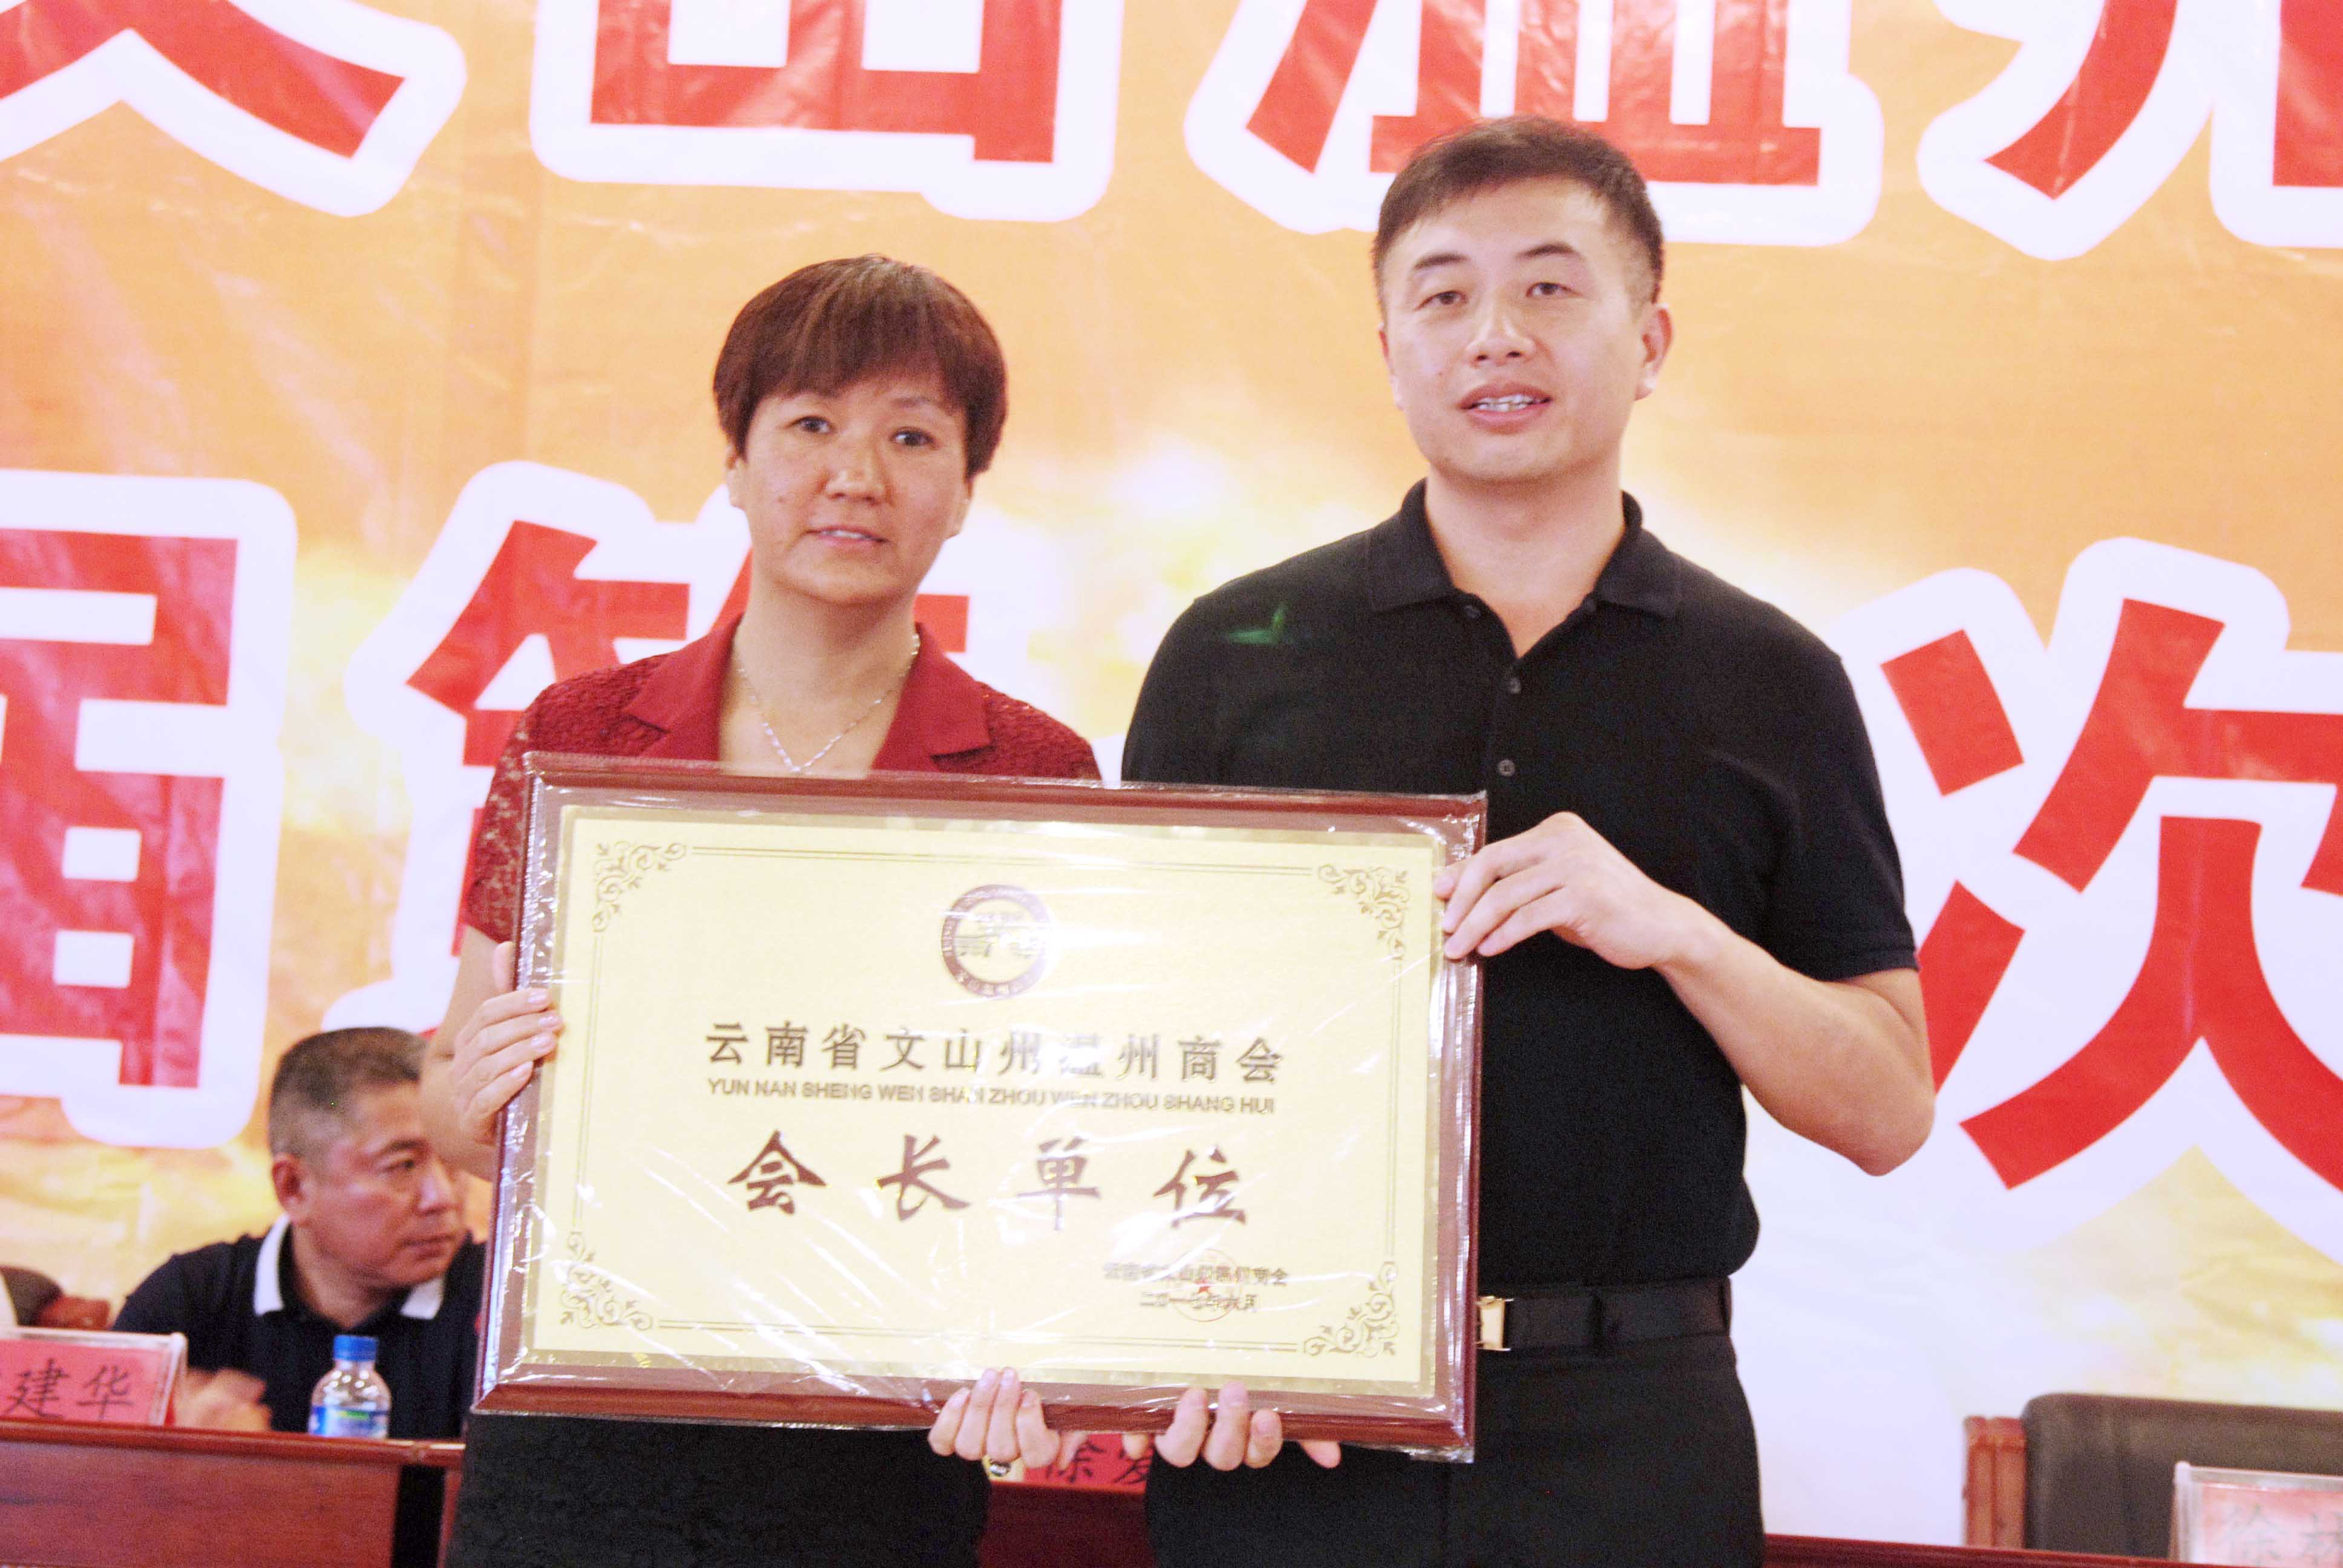 文山州招商合作局副局长徐爱萍为第三届会长授牌